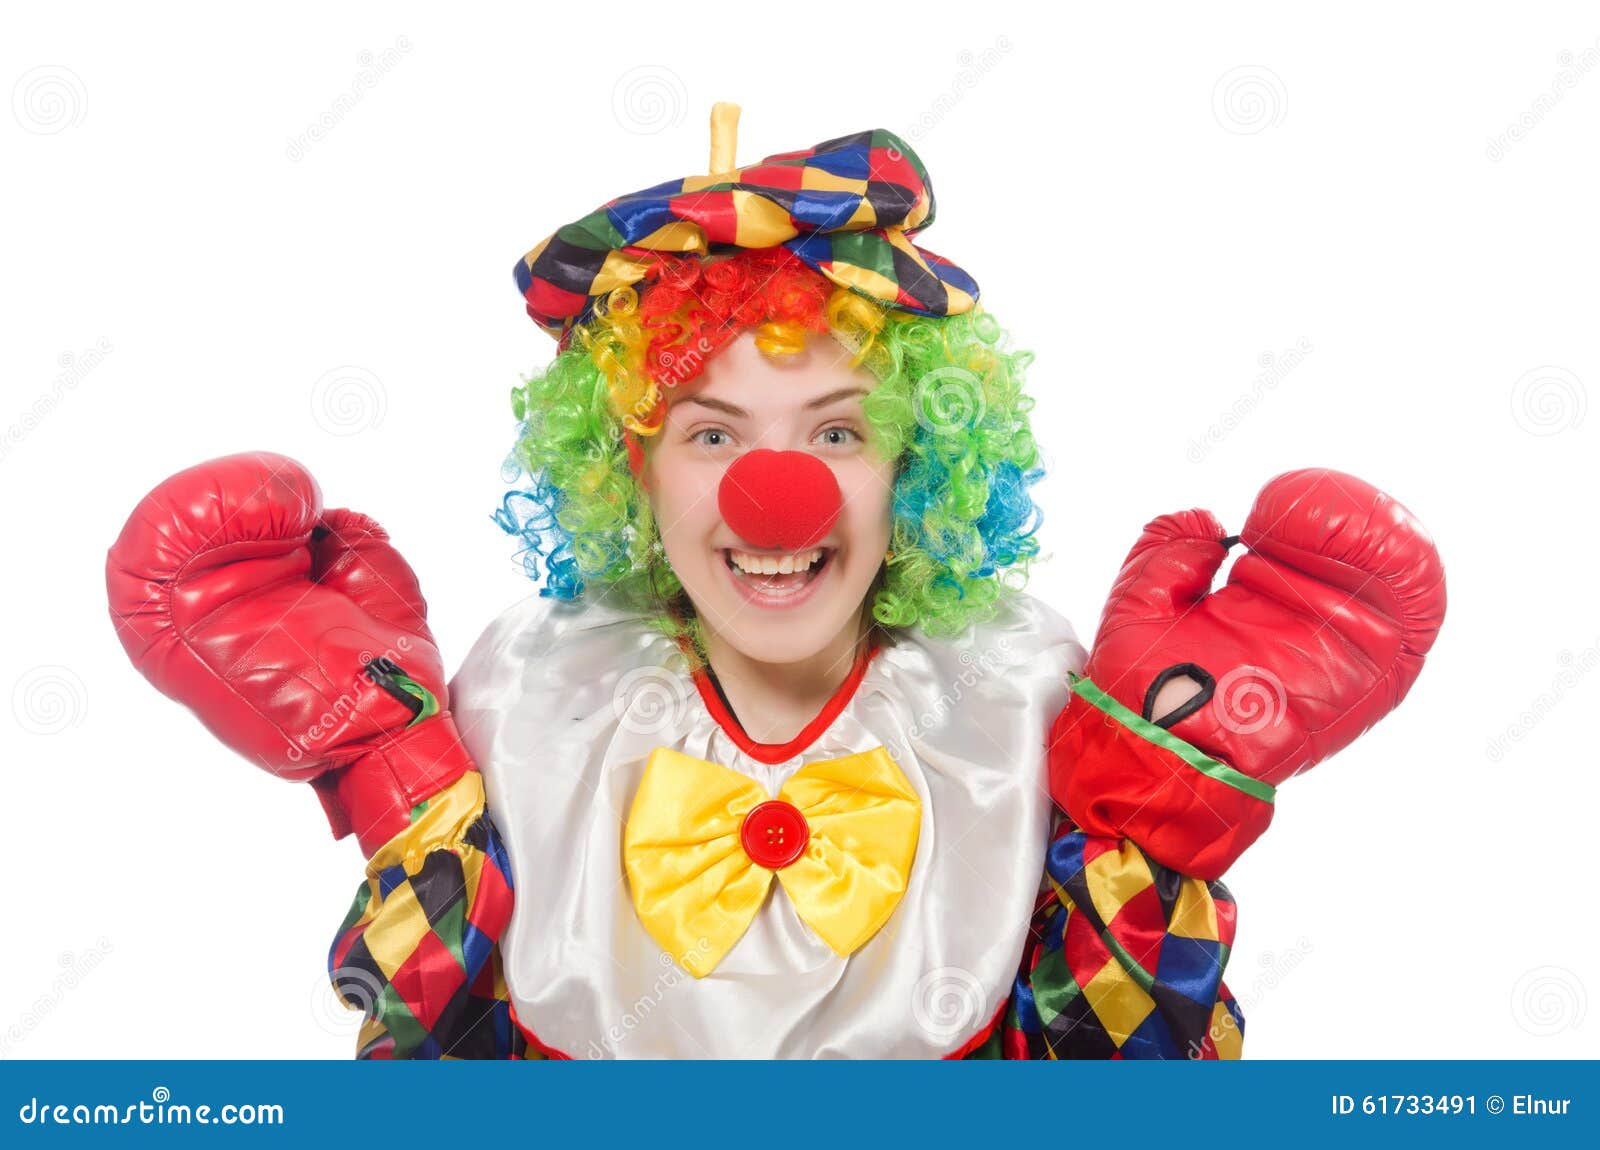 Клоун бокс. Клоунские перчатки. Клоун в боксерских перчатках. Клоун в перчатках. Перчатка клоуна.